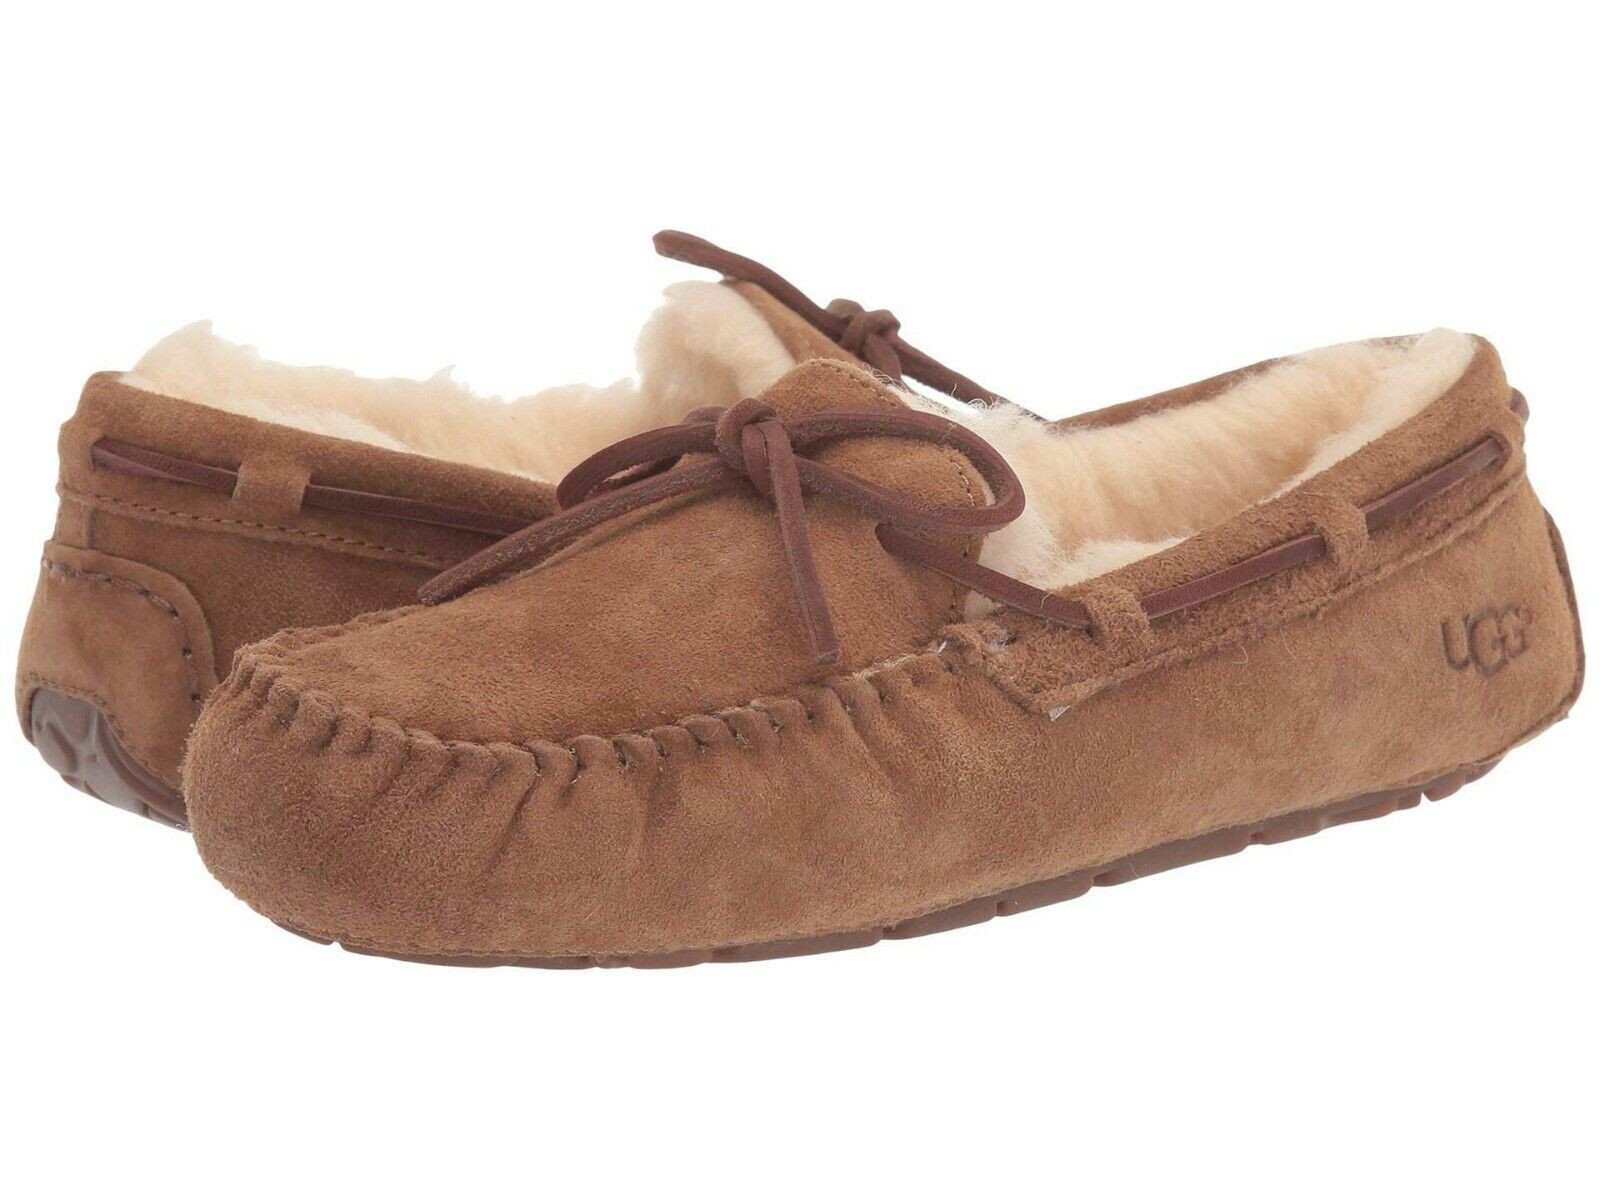 Women's Shoes UGG DAKOTA Suede Indoor/Outdoor Moccasin Slippers 1107949  CHESTNUT